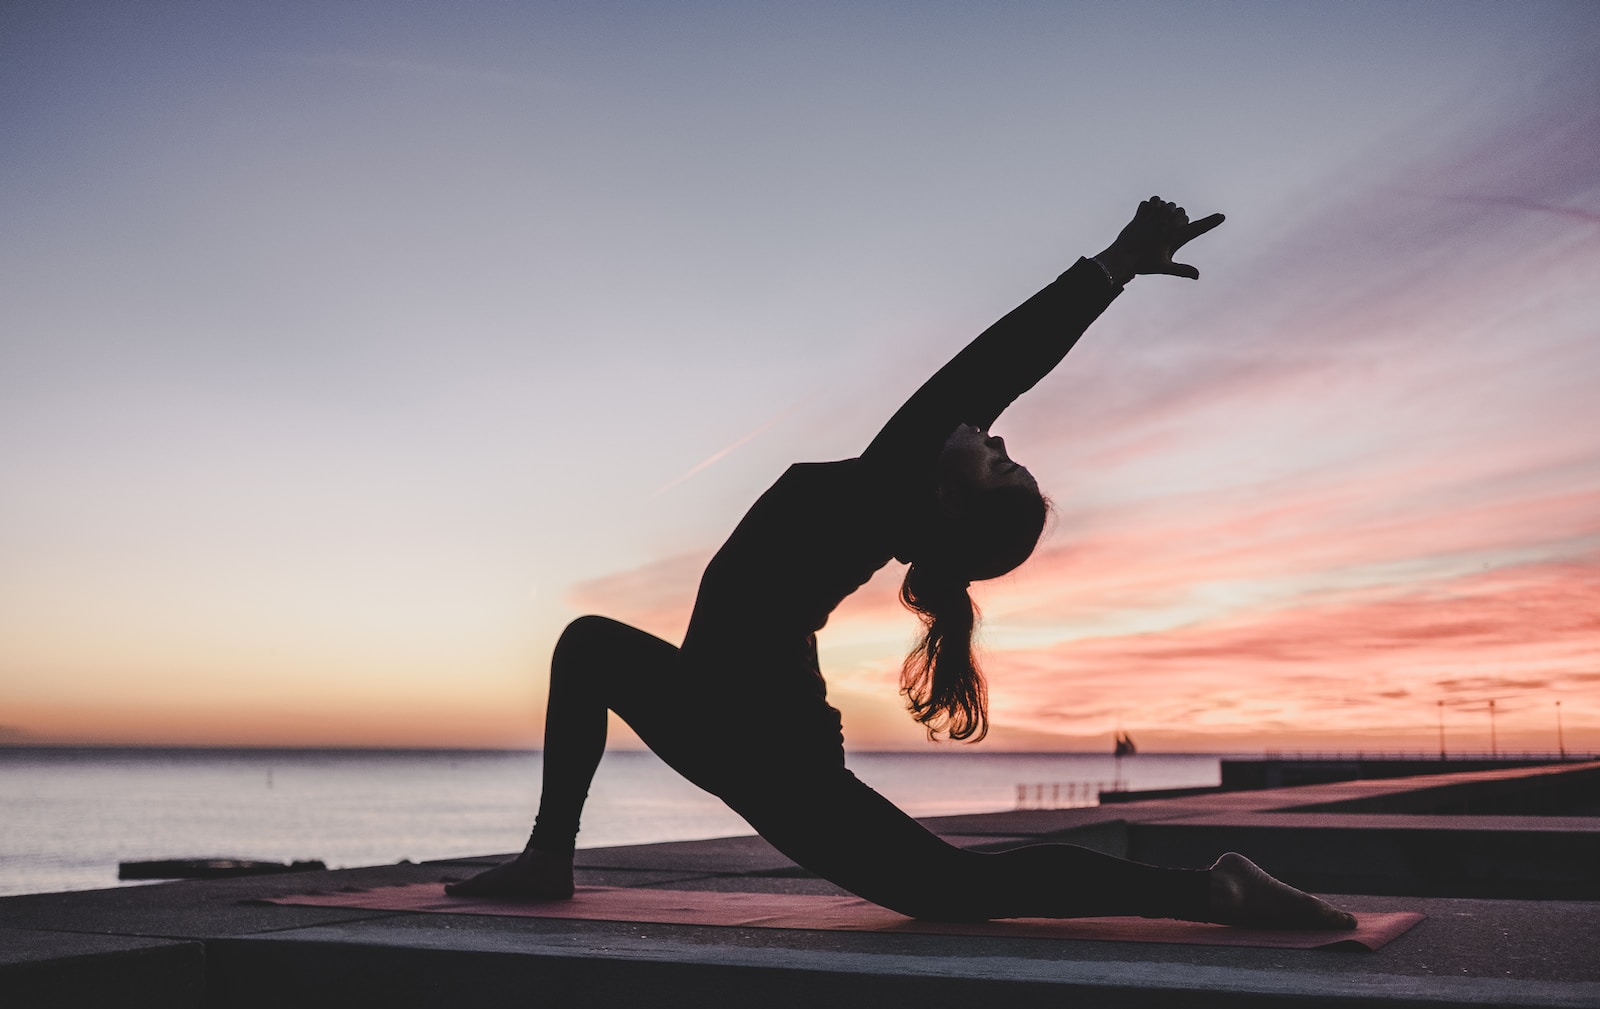 Yoga oplevelse, giv et yoga ophold i gave, bedste oplevelse, krop og sjæl